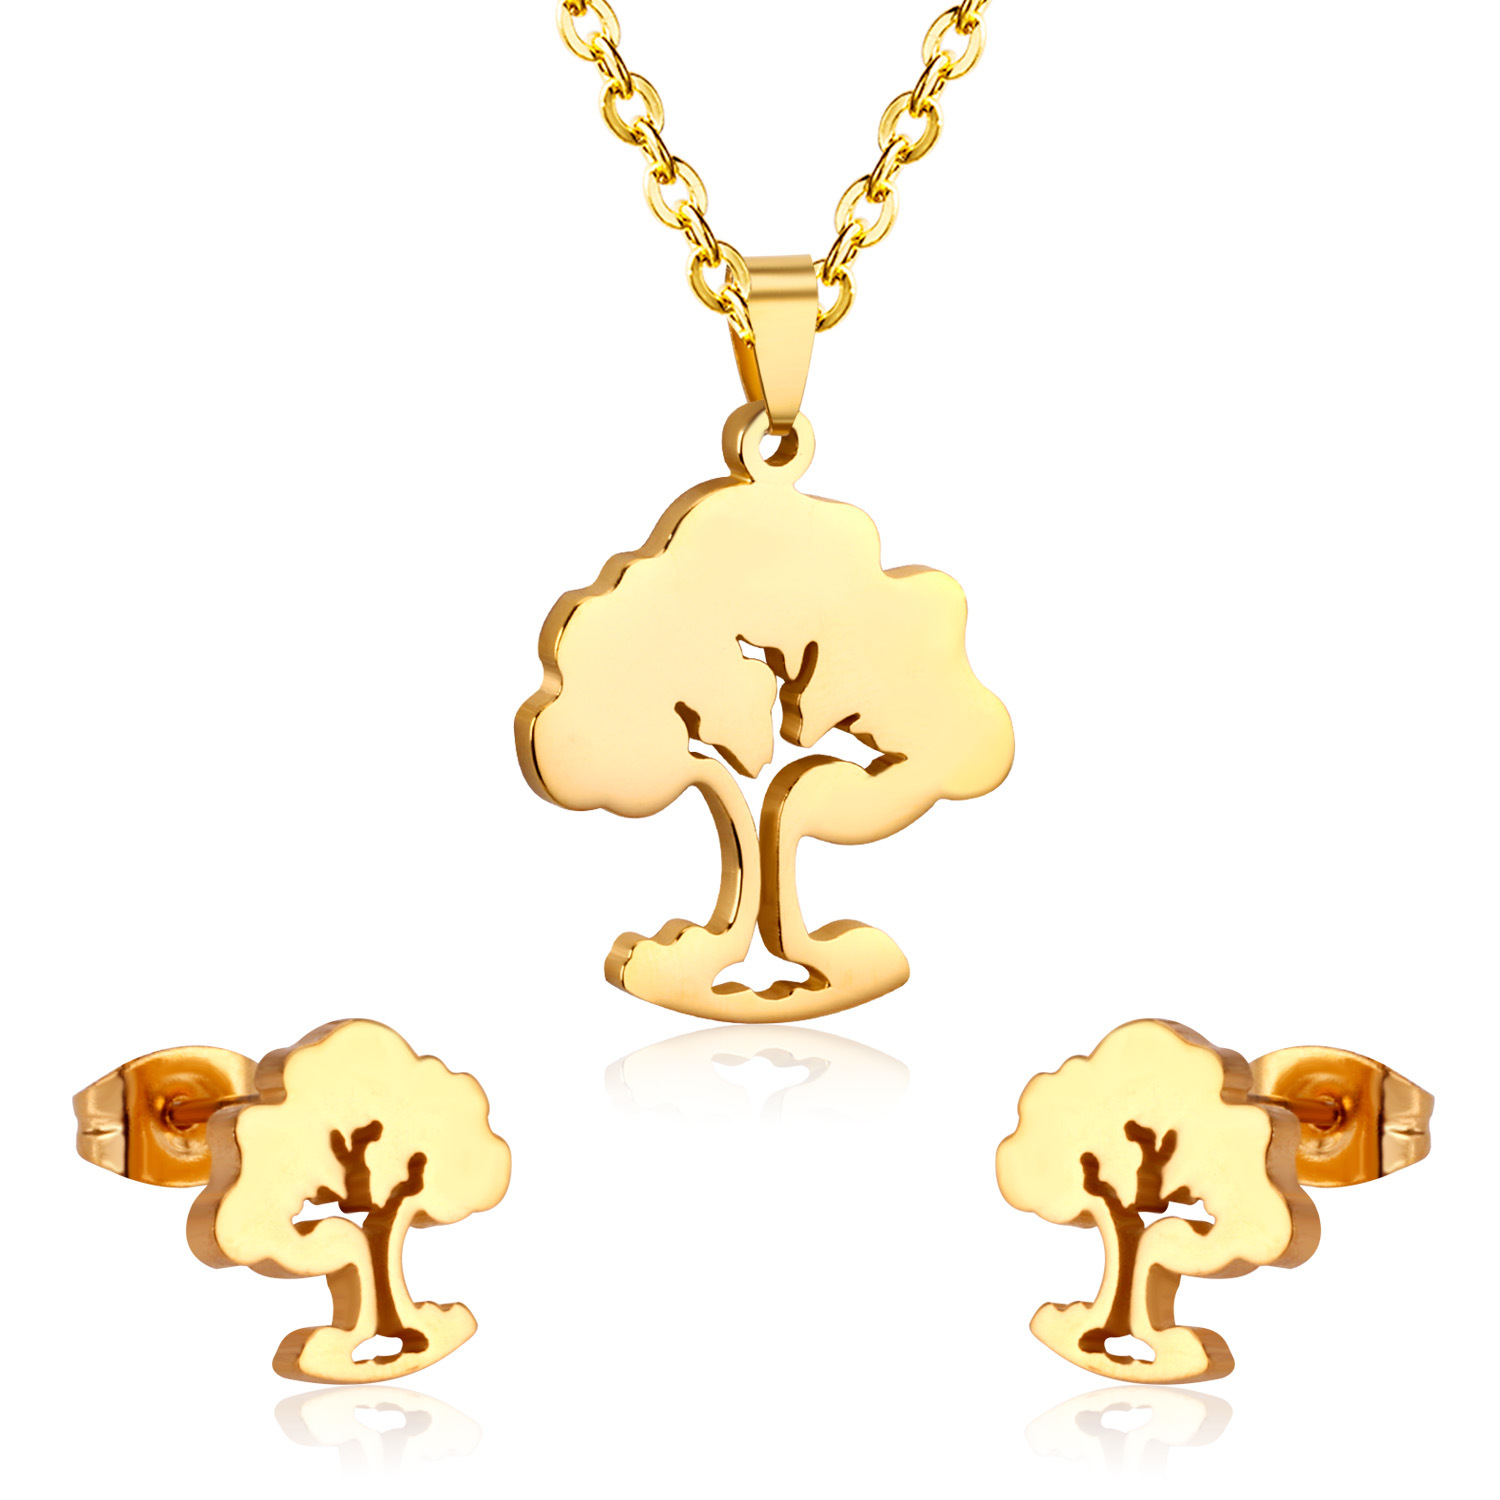 2:golden tree